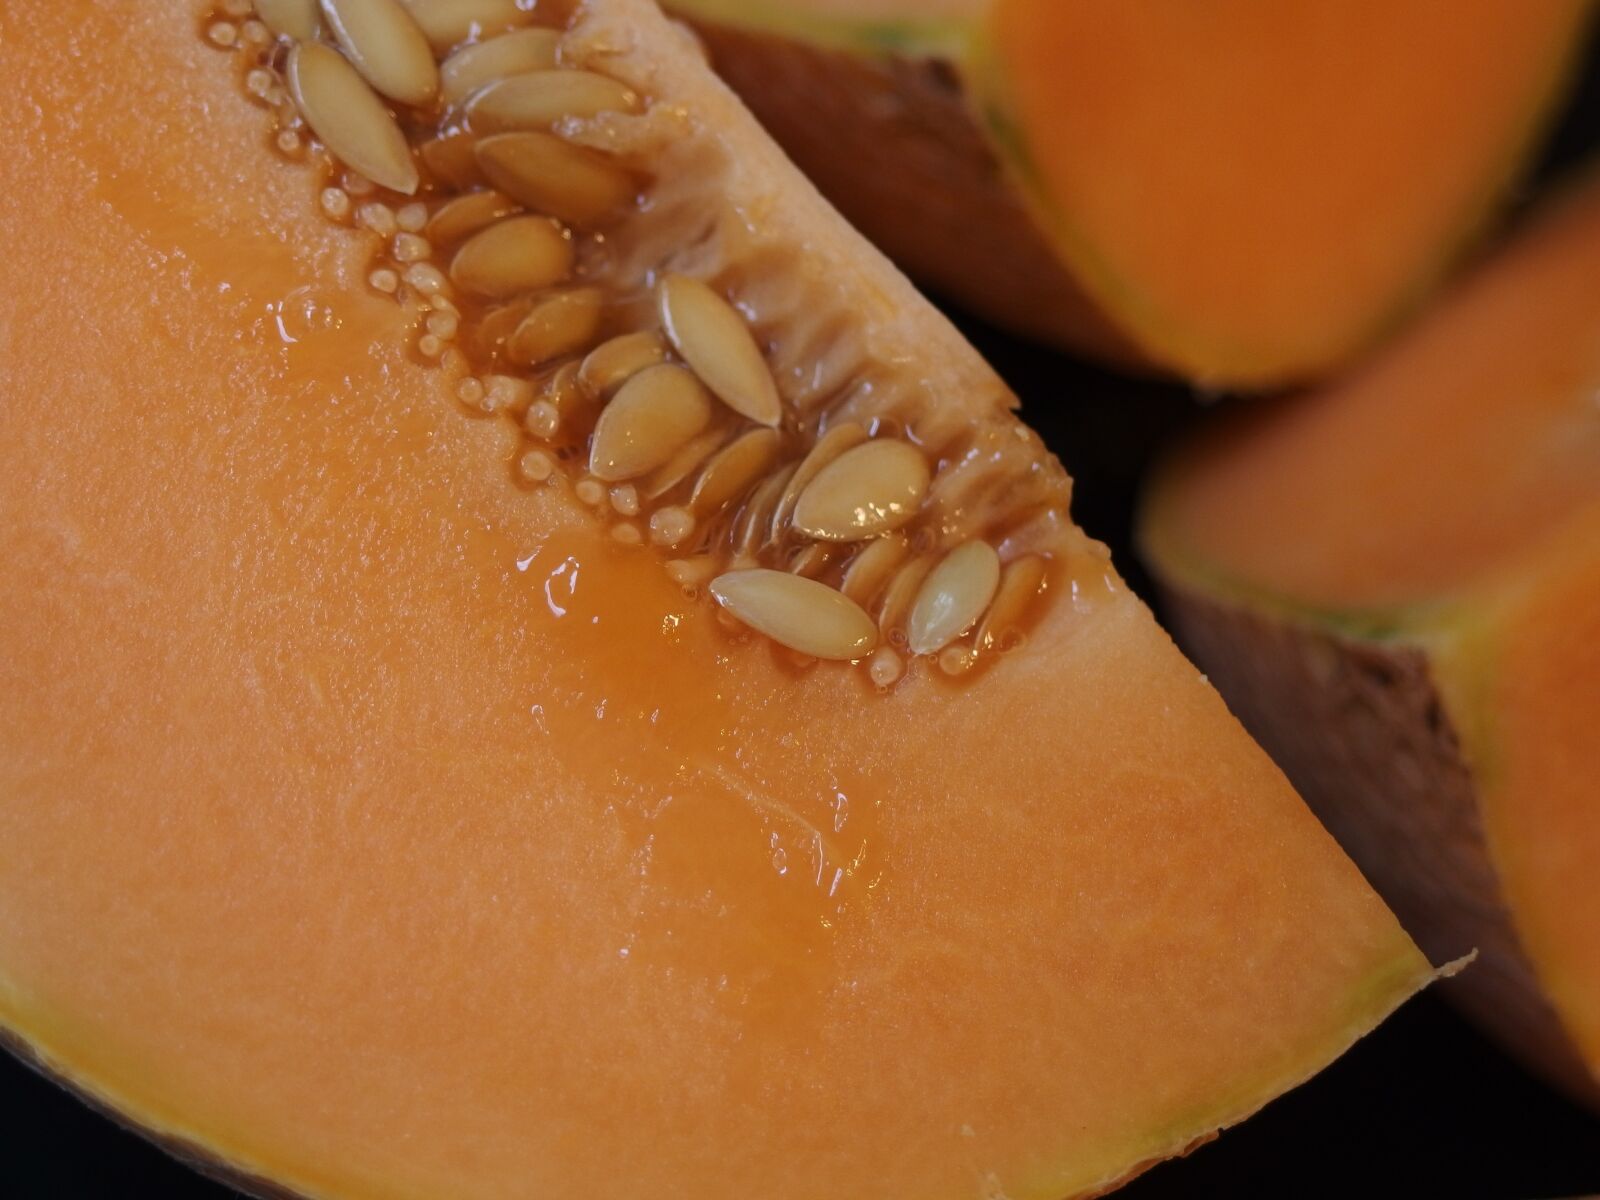 Olympus XZ-2 iHS sample photo. Melon, cantaloupe, orange fruit photography